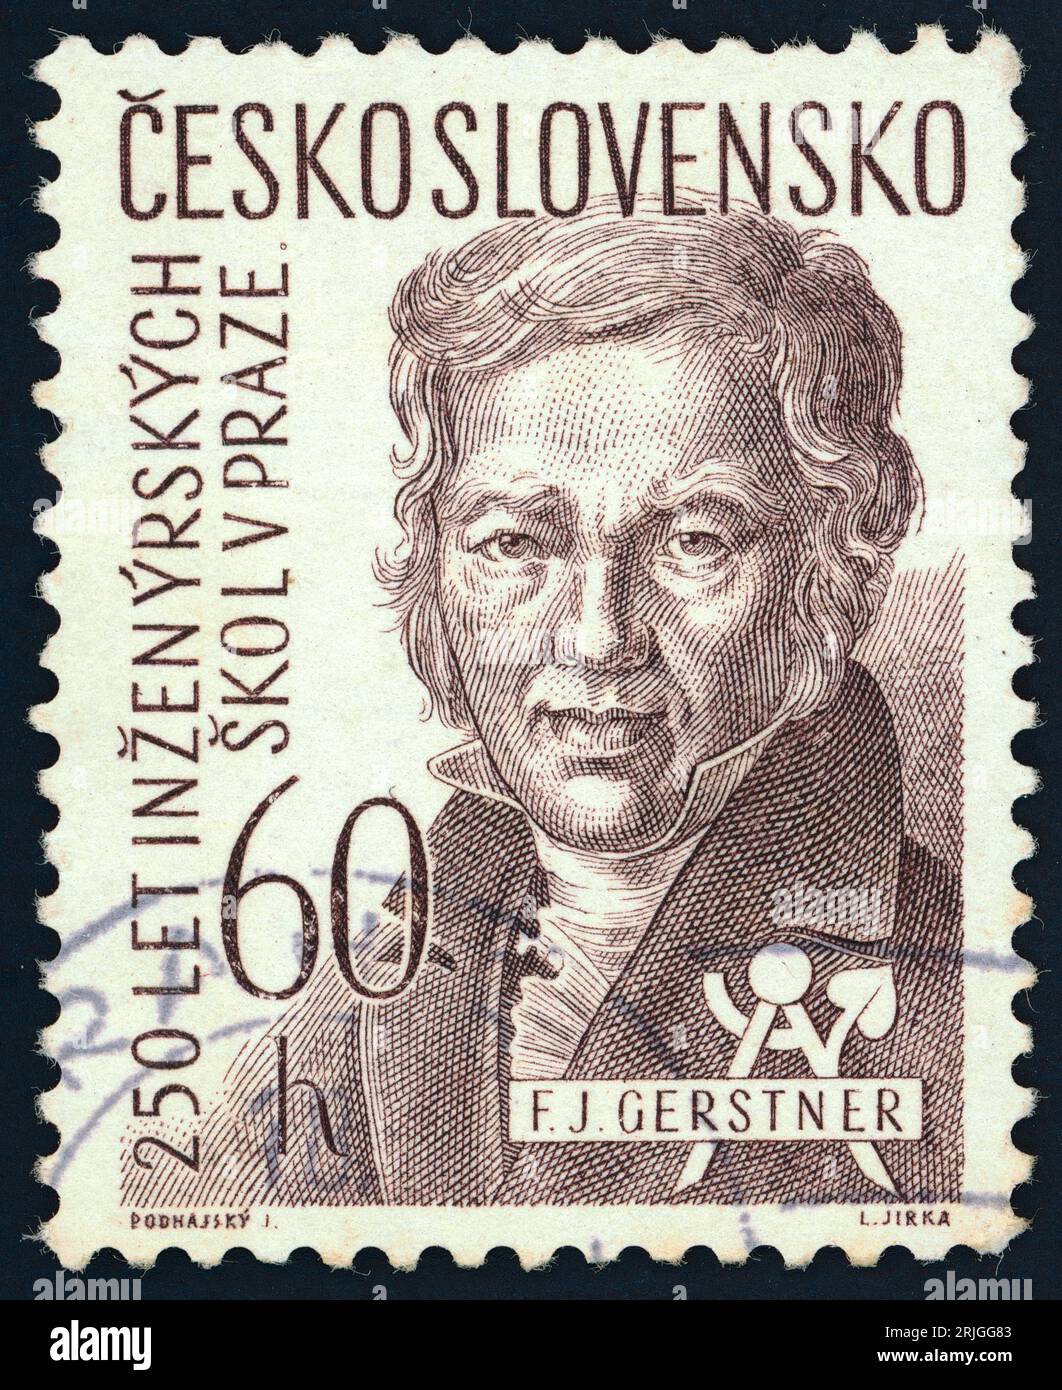 Franz Josef Gerstner (1756 – 1832). Timbre-poste émis en Tchécoslovaquie en 1957. Gerstner était un physicien, astronome et ingénieur germano-bohémien. Banque D'Images